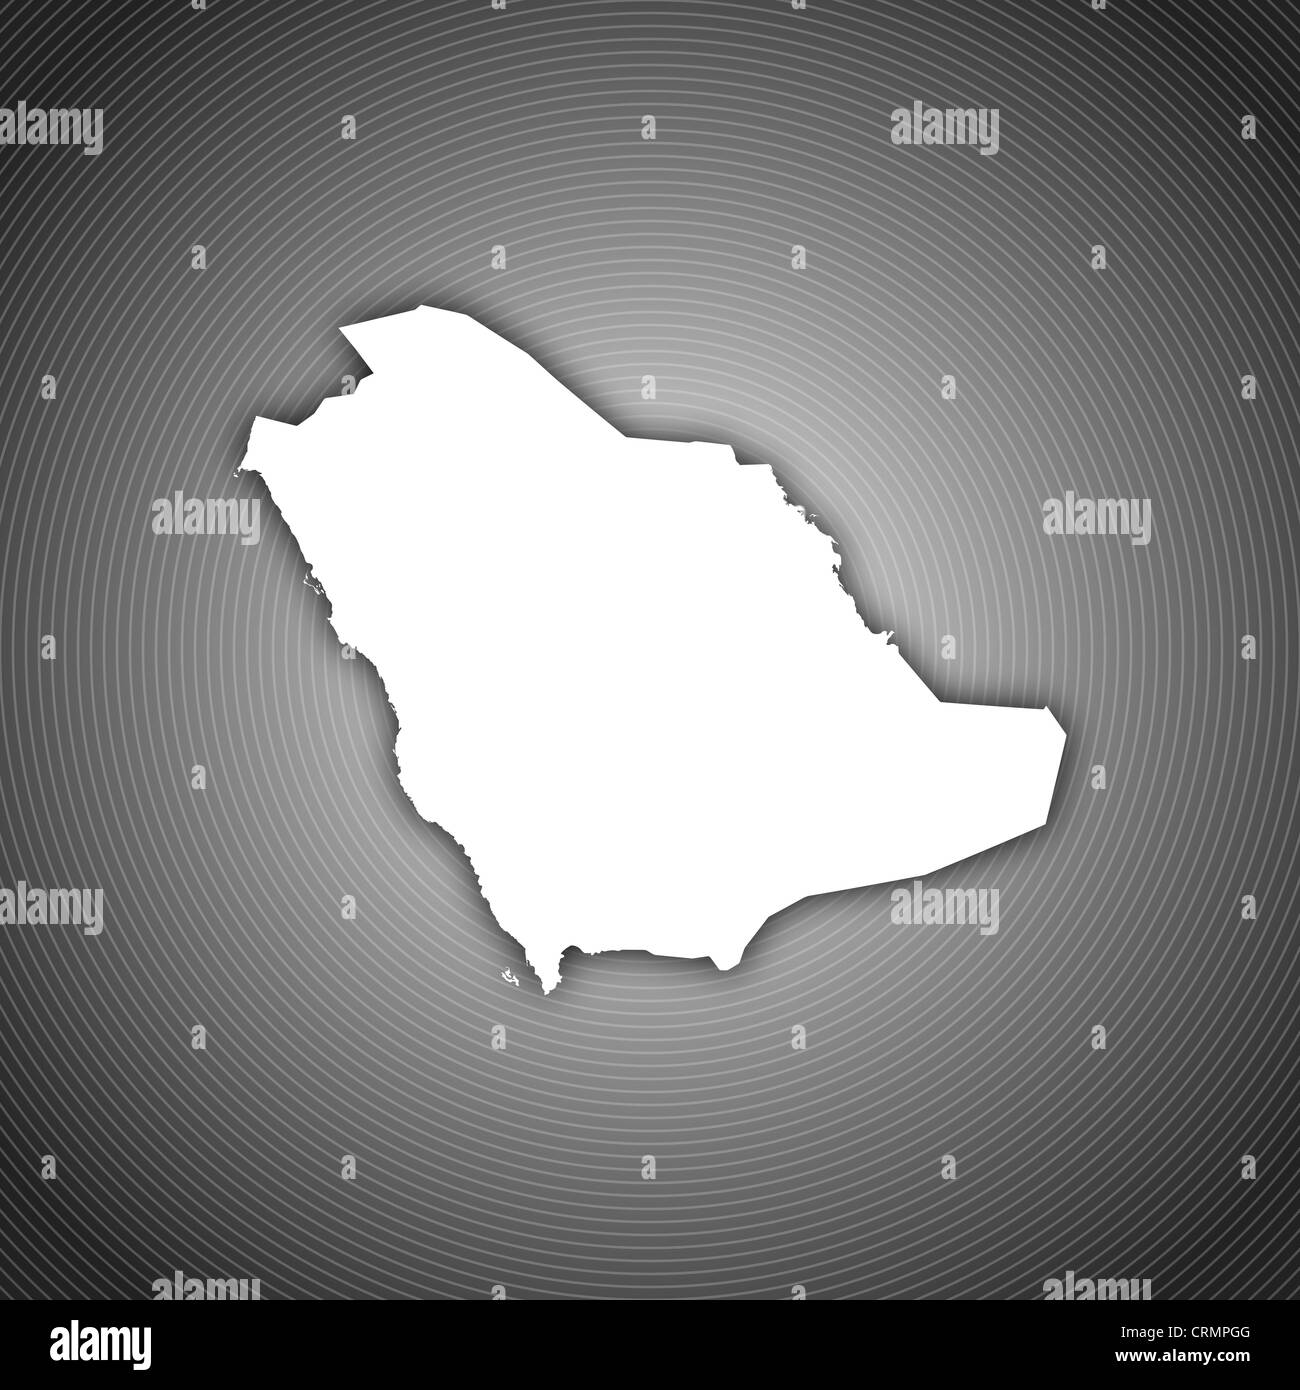 Mappa Politico di Arabia Saudita con le diverse province. Foto Stock